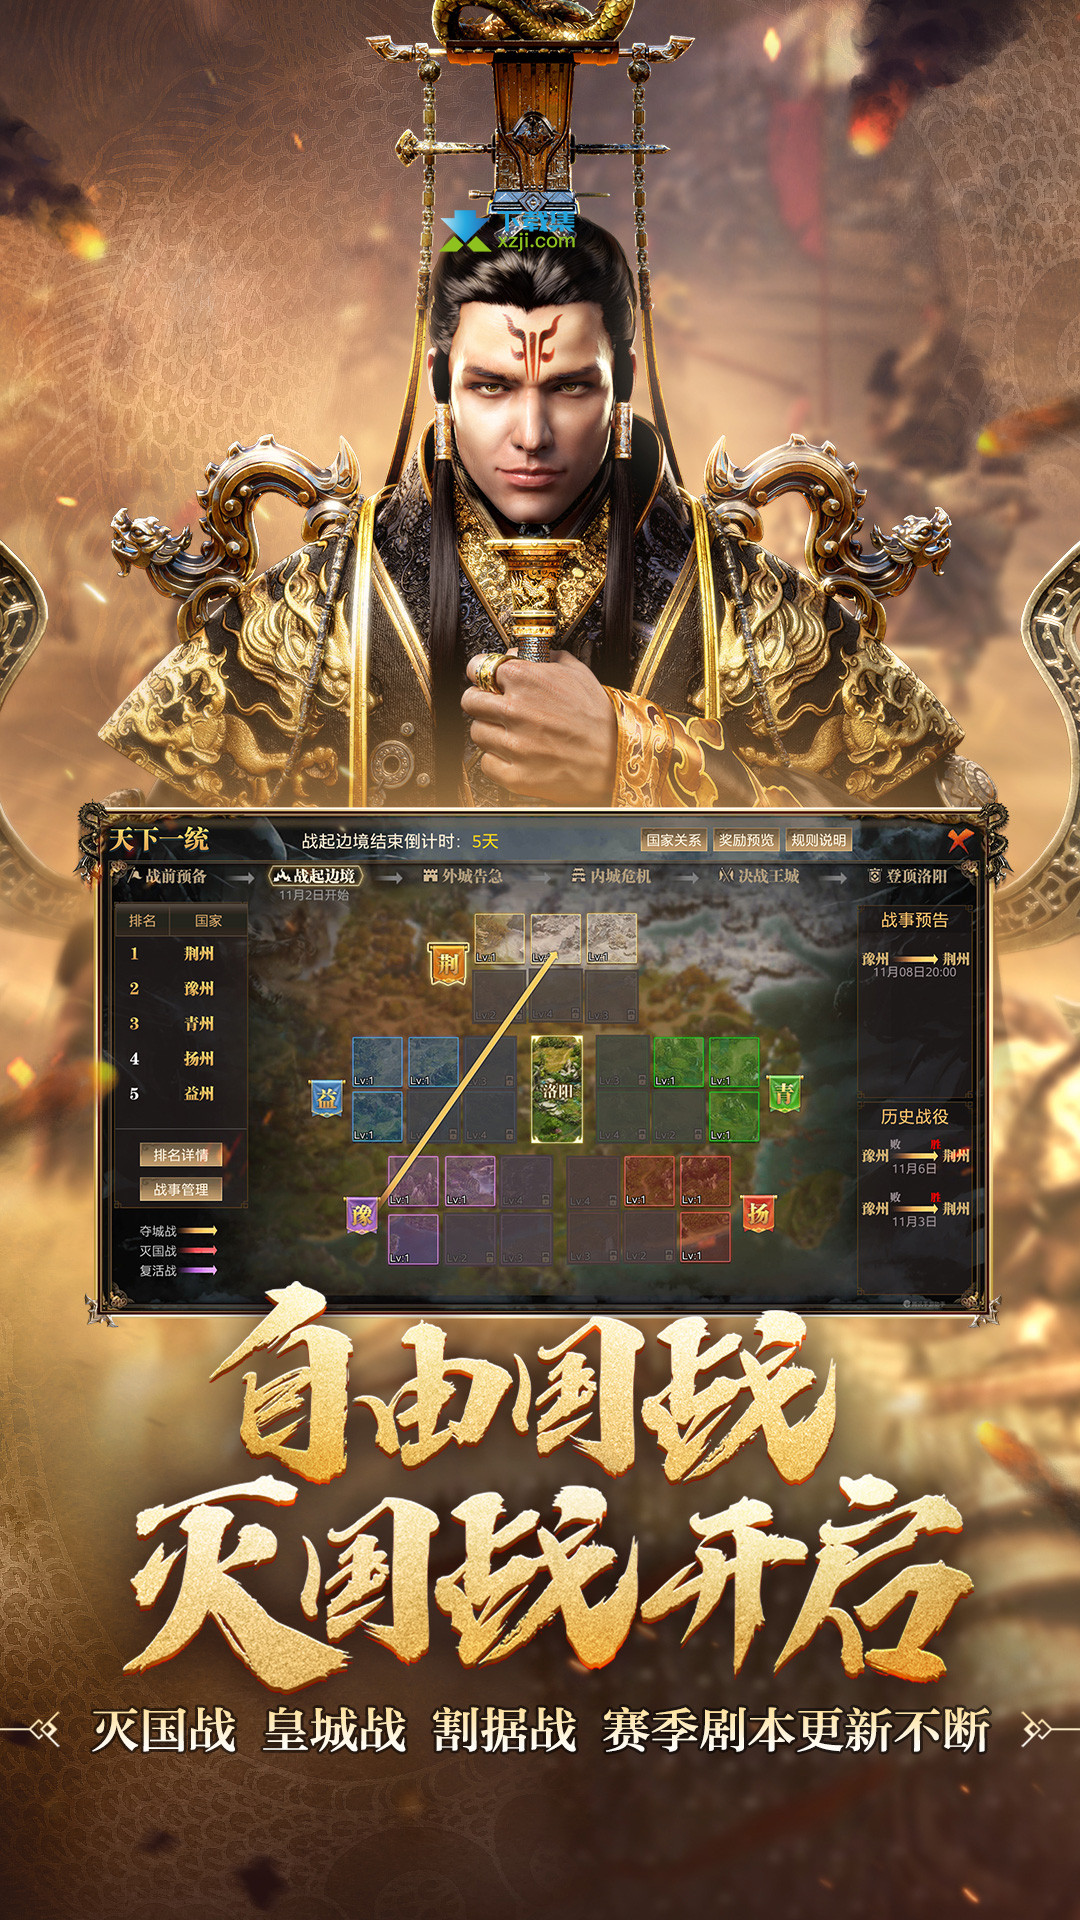 总有你喜欢的 《御龙在天》最新壁纸鉴赏_御龙在天专区_17173.com中国游戏第一门户站